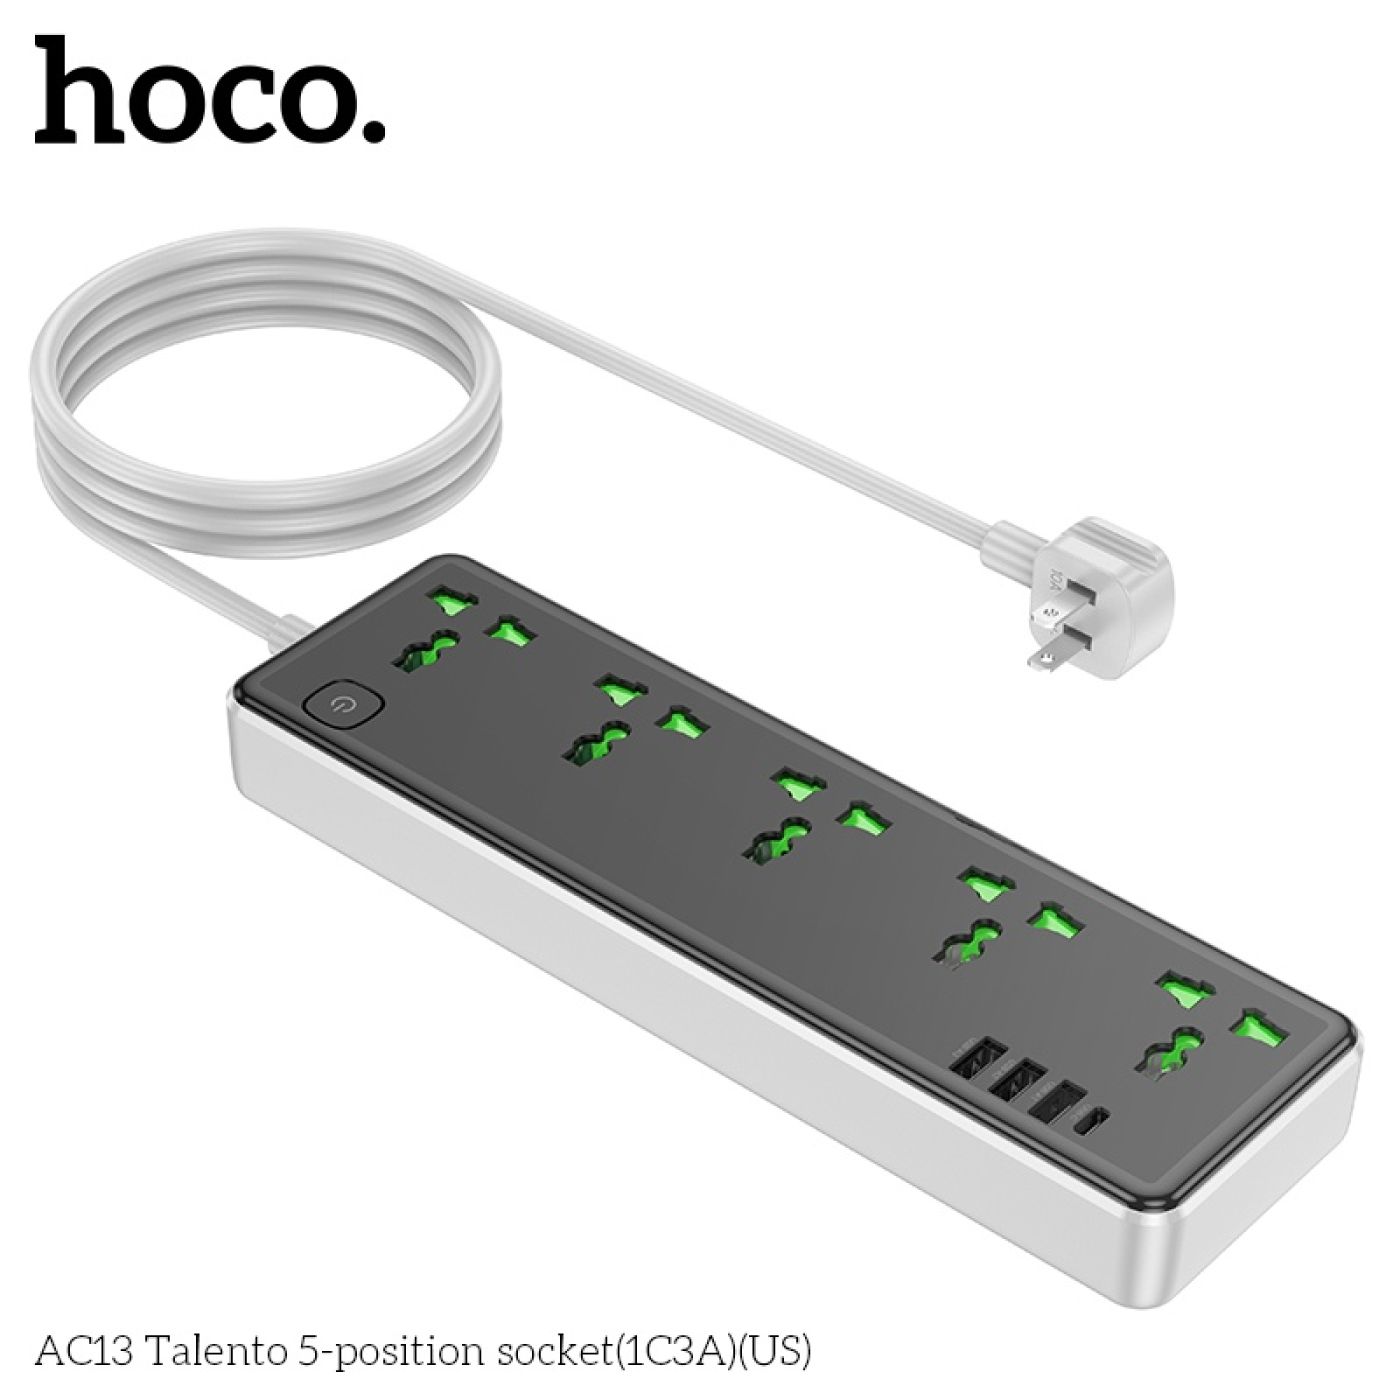 Ổ cắm điện đa năng Hoco AC13 chính hãng tích hợp sạc nhanh 3 cổng usb và 1 cổng typec 17W dài 1.5m